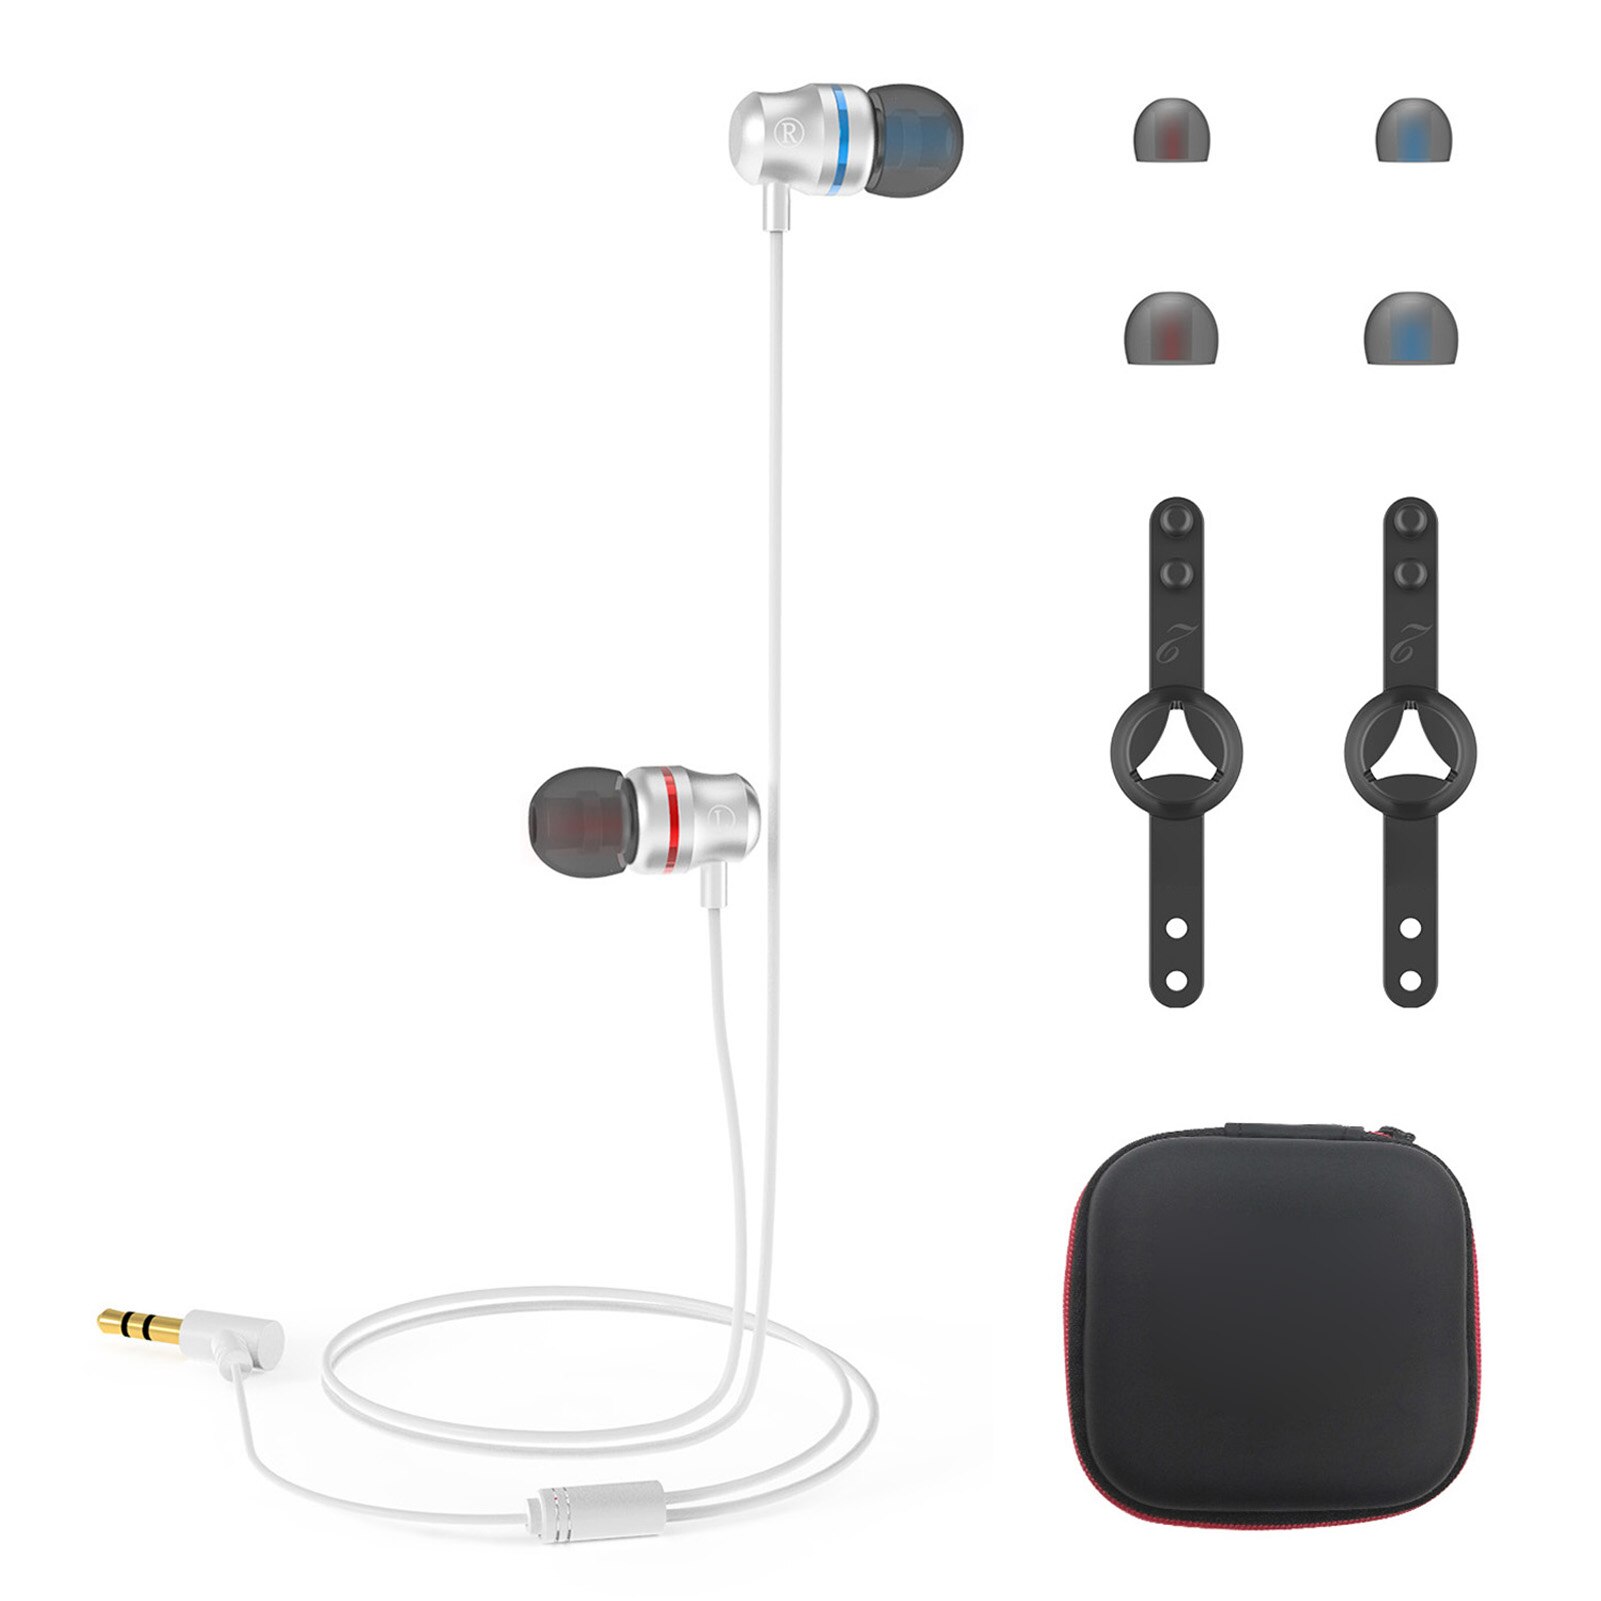 Bedrade Oortelefoon Voor Oculus Quest 2 Vr Headset Replecement Surround Sound In-Ear Oortelefoon Met S/M/L Oordopjes Cap Accessoires